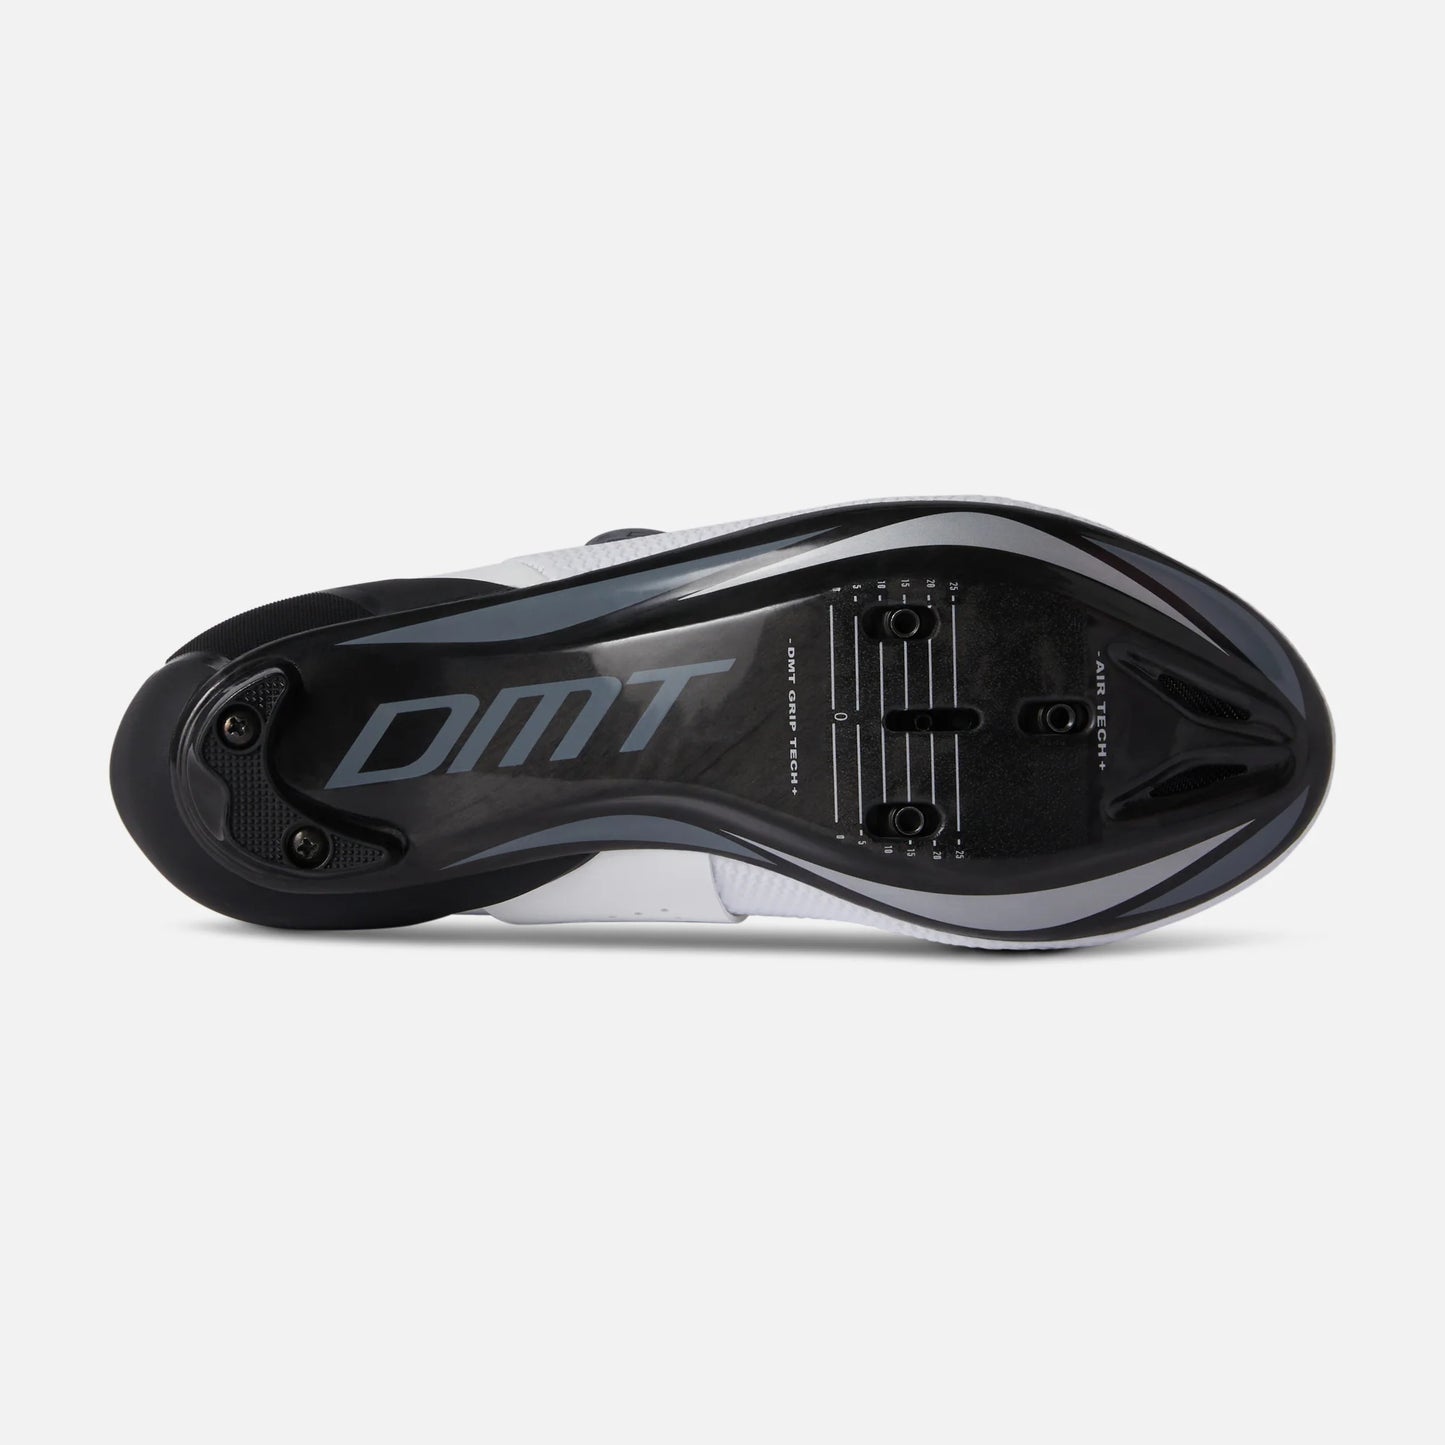 DMT Shoes SH10